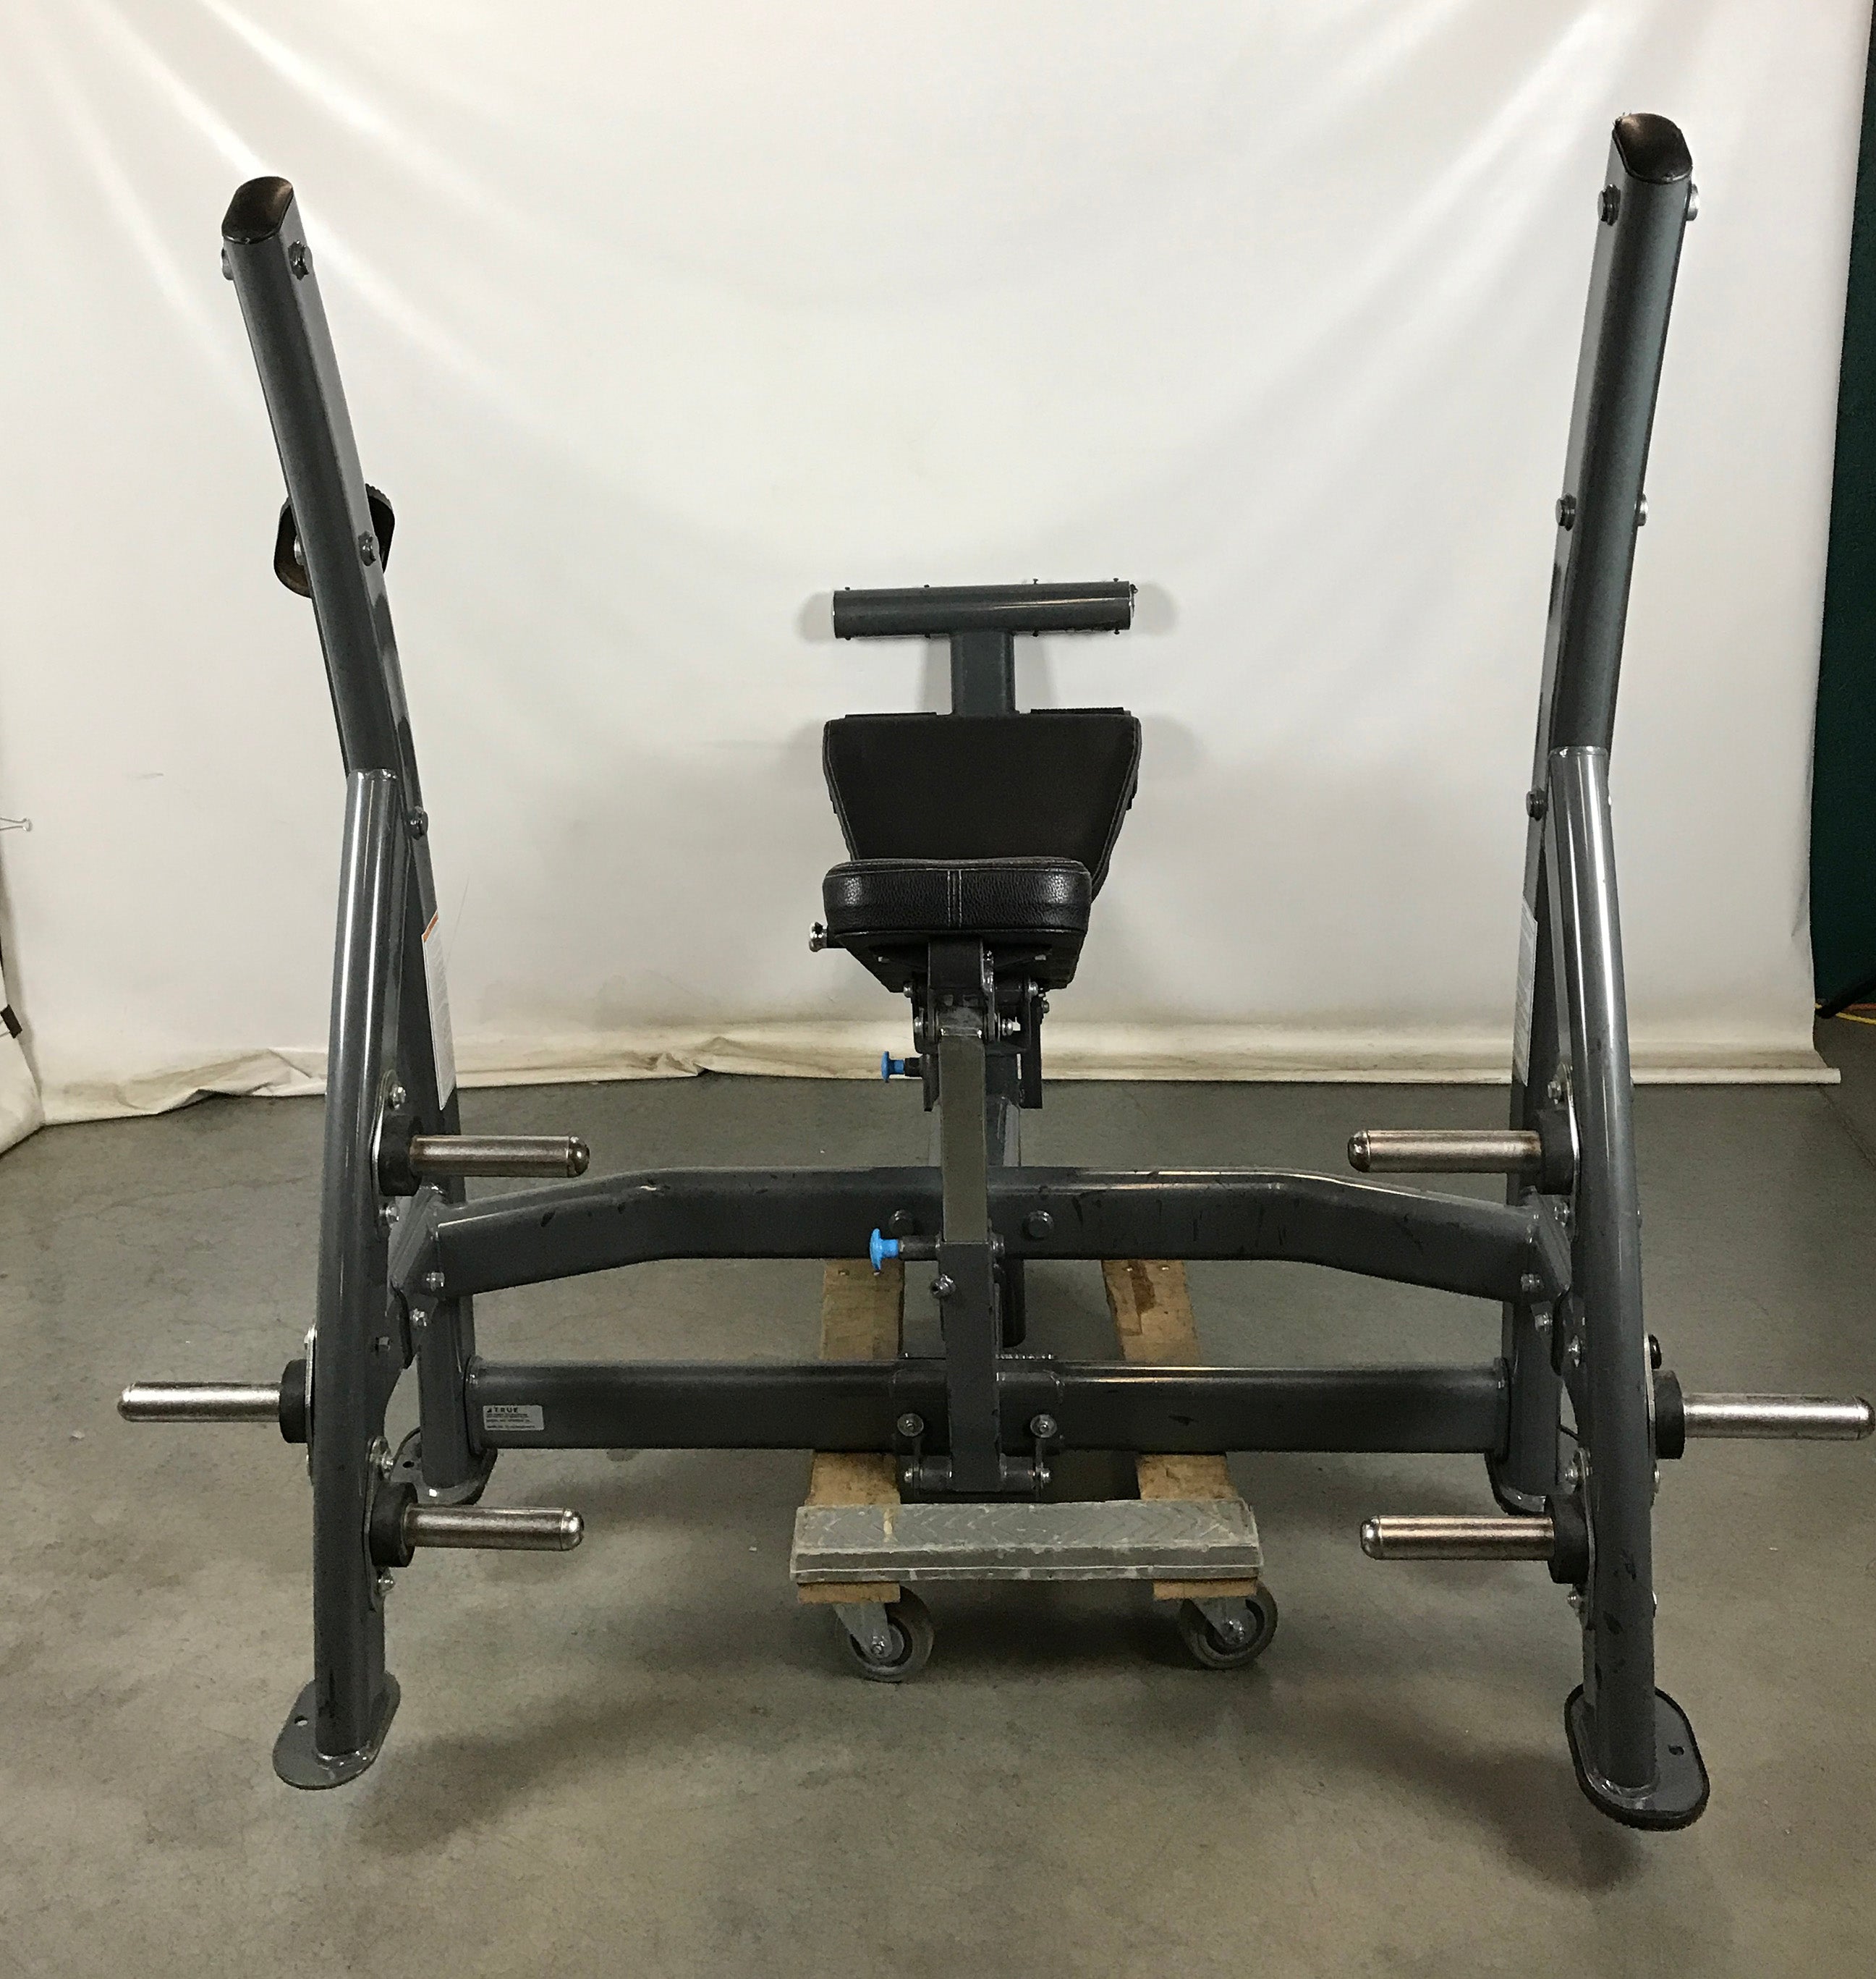 True XFW-8200 Olympic Multi-Press Bench